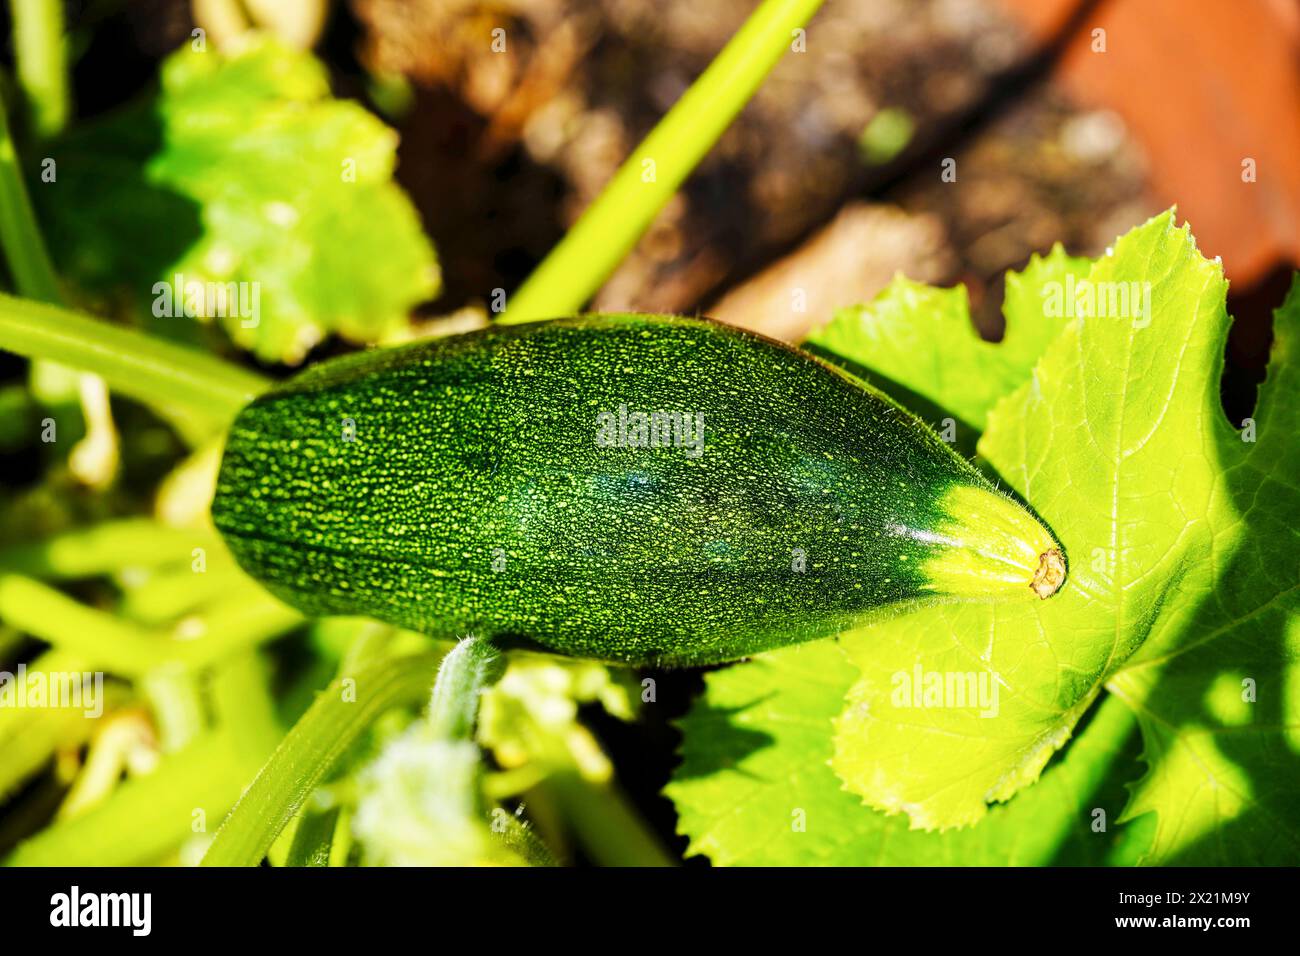 courgette, zucchini (Cucurbita pepo var. giromontiia, Cucurbita pepo subsp. pepo convar. giromontiina), Zucchini on the plant Stock Photo